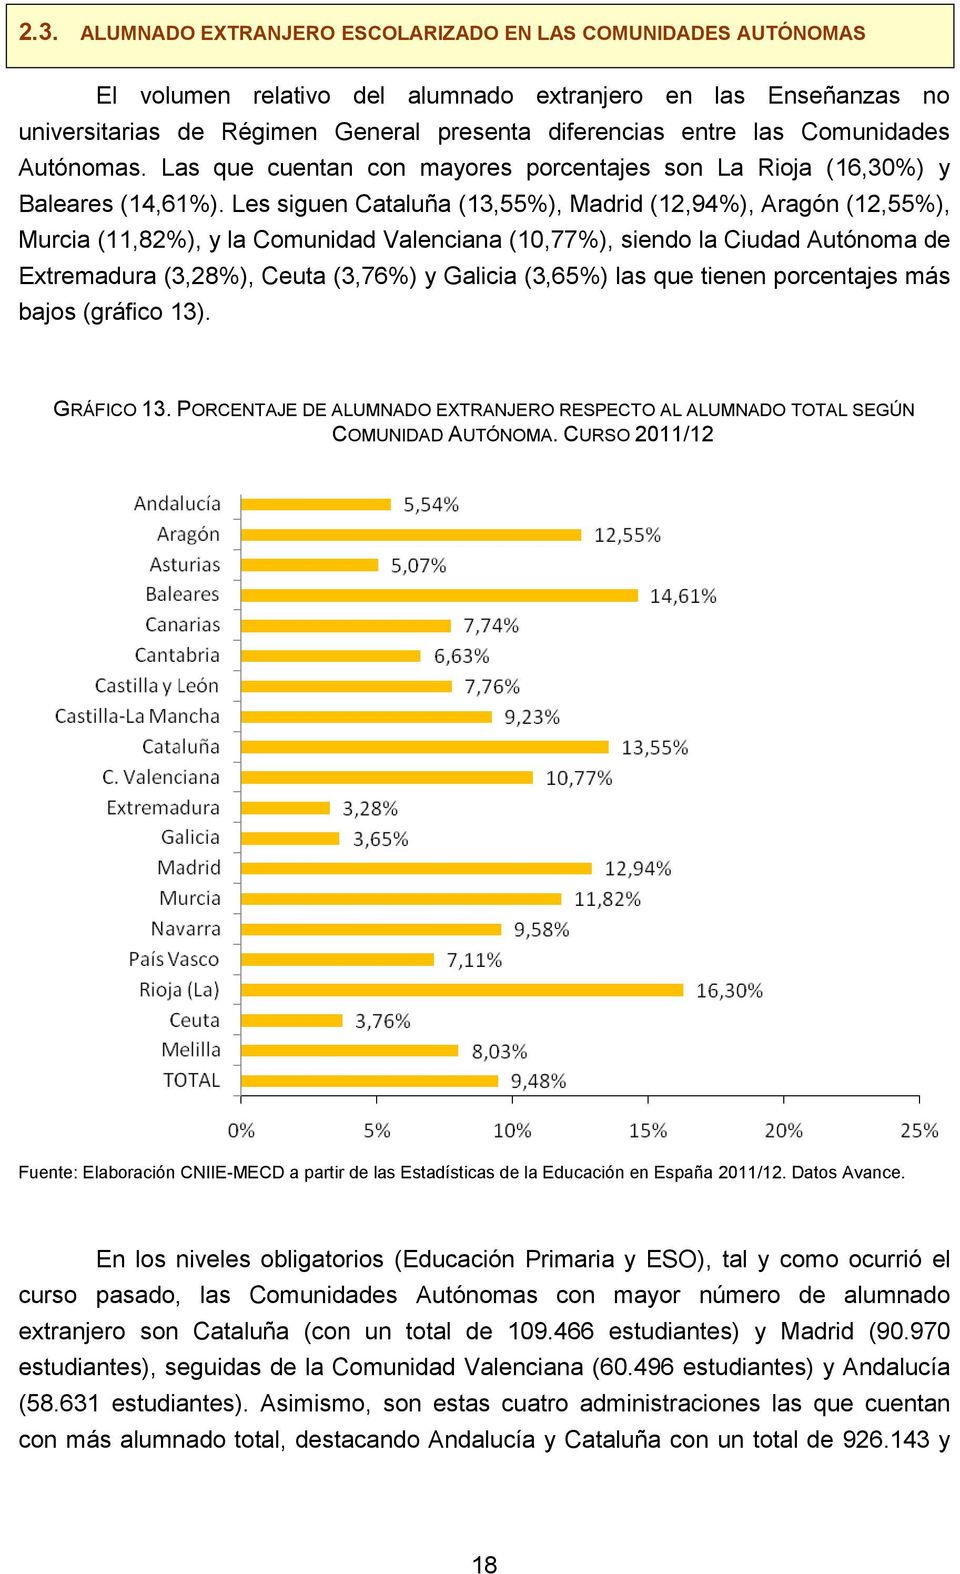 Les siguen Cataluña (13,55%), Madrid (12,94%), Aragón (12,55%), Murcia (11,82%), y la Comunidad Valenciana (10,77%), siendo la Ciudad Autónoma de Extremadura (3,28%), Ceuta (3,76%) y Galicia (3,65%)